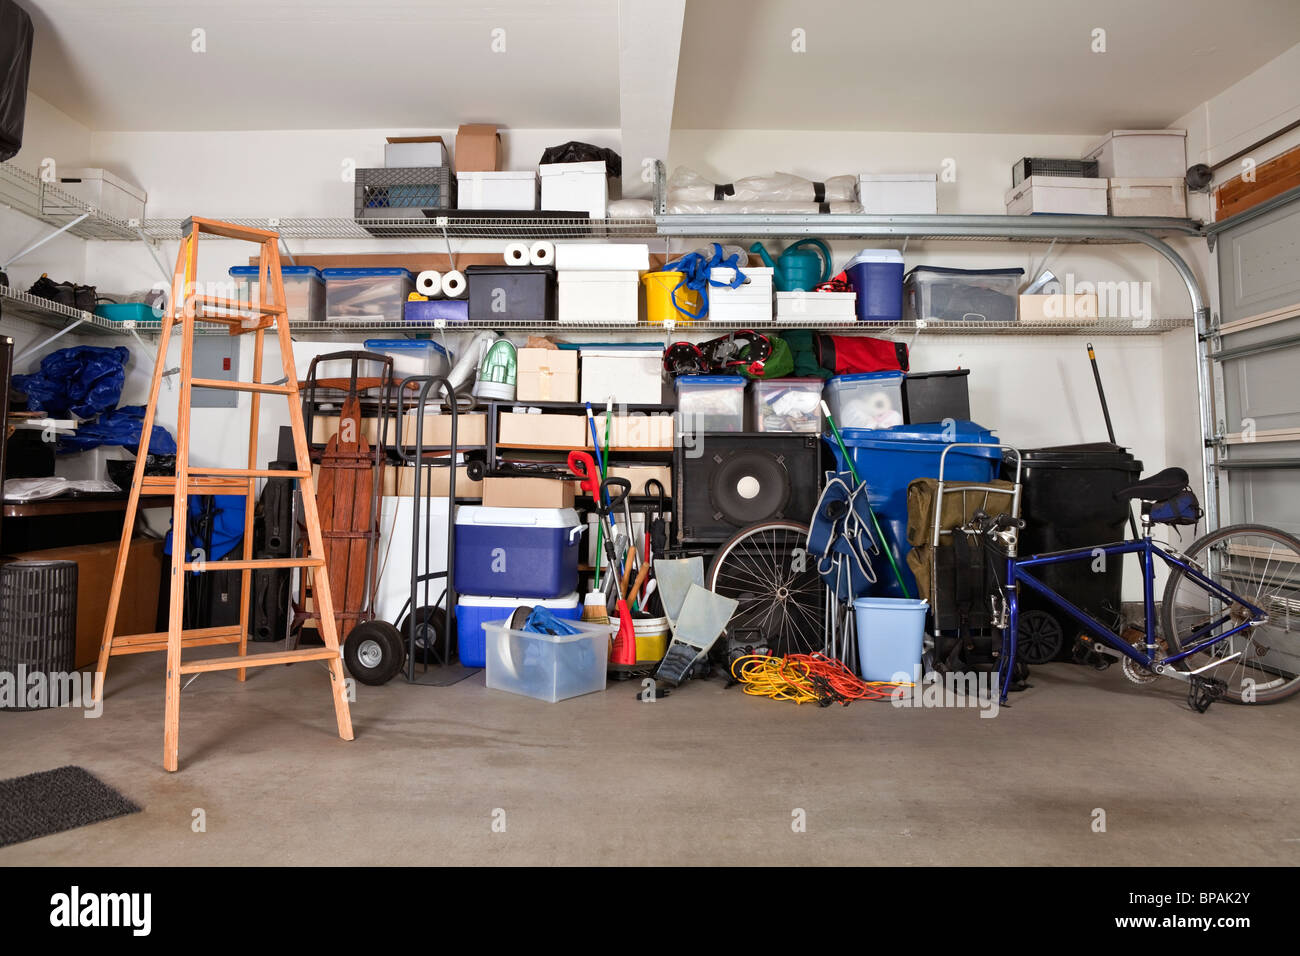 S Garage durcheinander. Boxen, Werkzeuge und Spielzeuge in Unordnung. Stockfoto